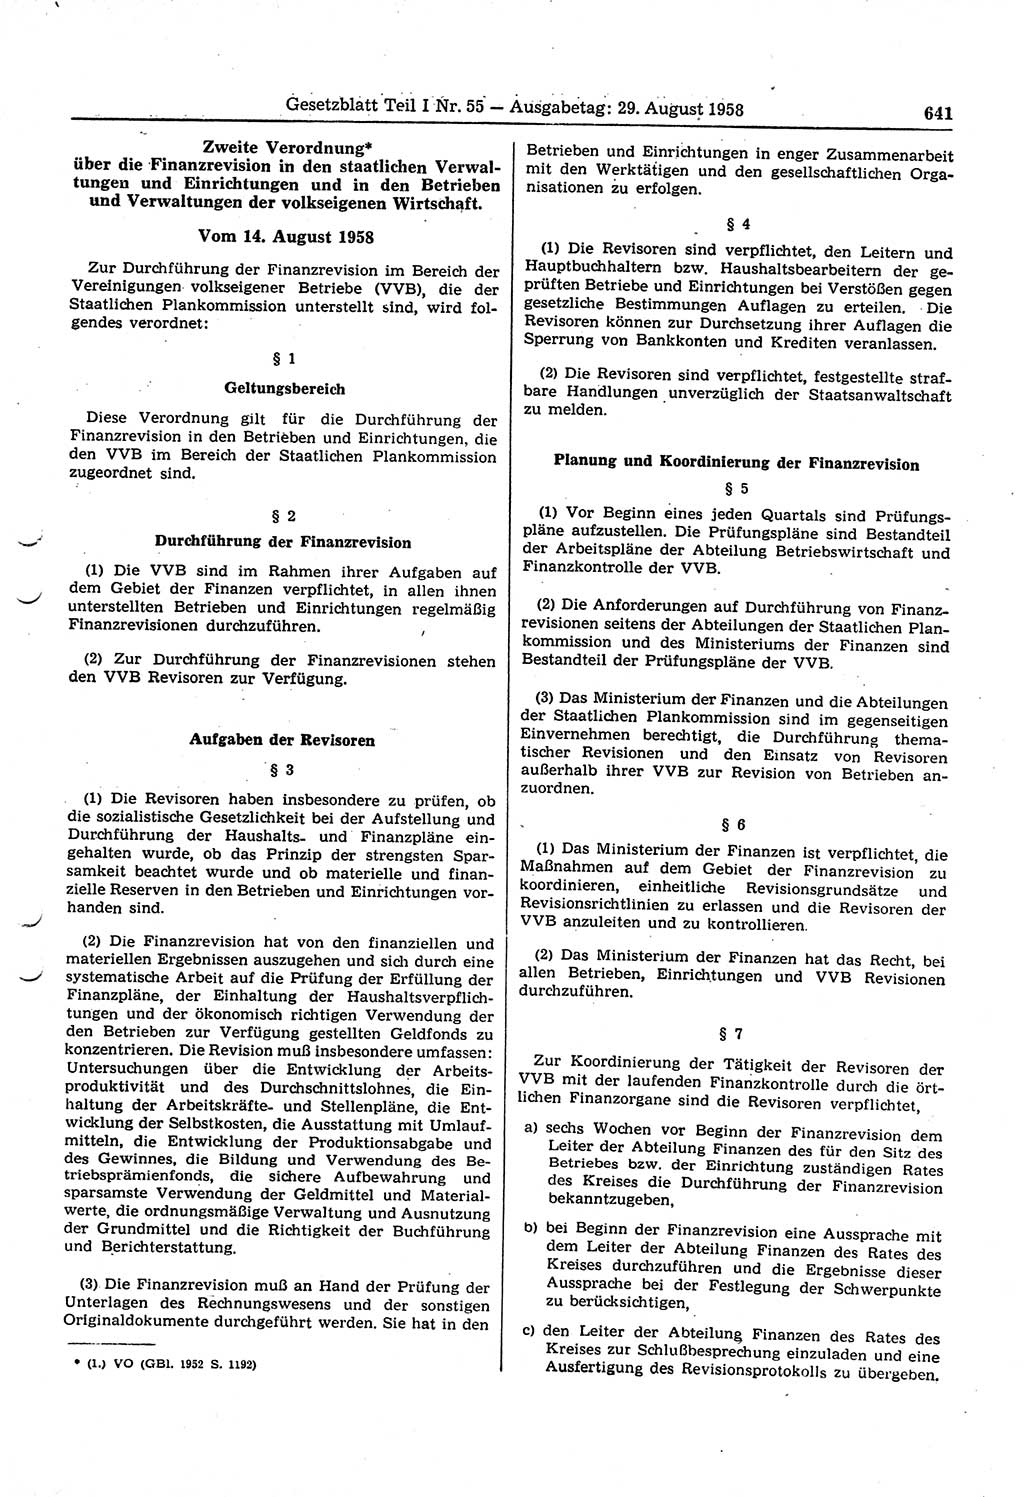 Gesetzblatt (GBl.) der Deutschen Demokratischen Republik (DDR) Teil Ⅰ 1958, Seite 641 (GBl. DDR Ⅰ 1958, S. 641)